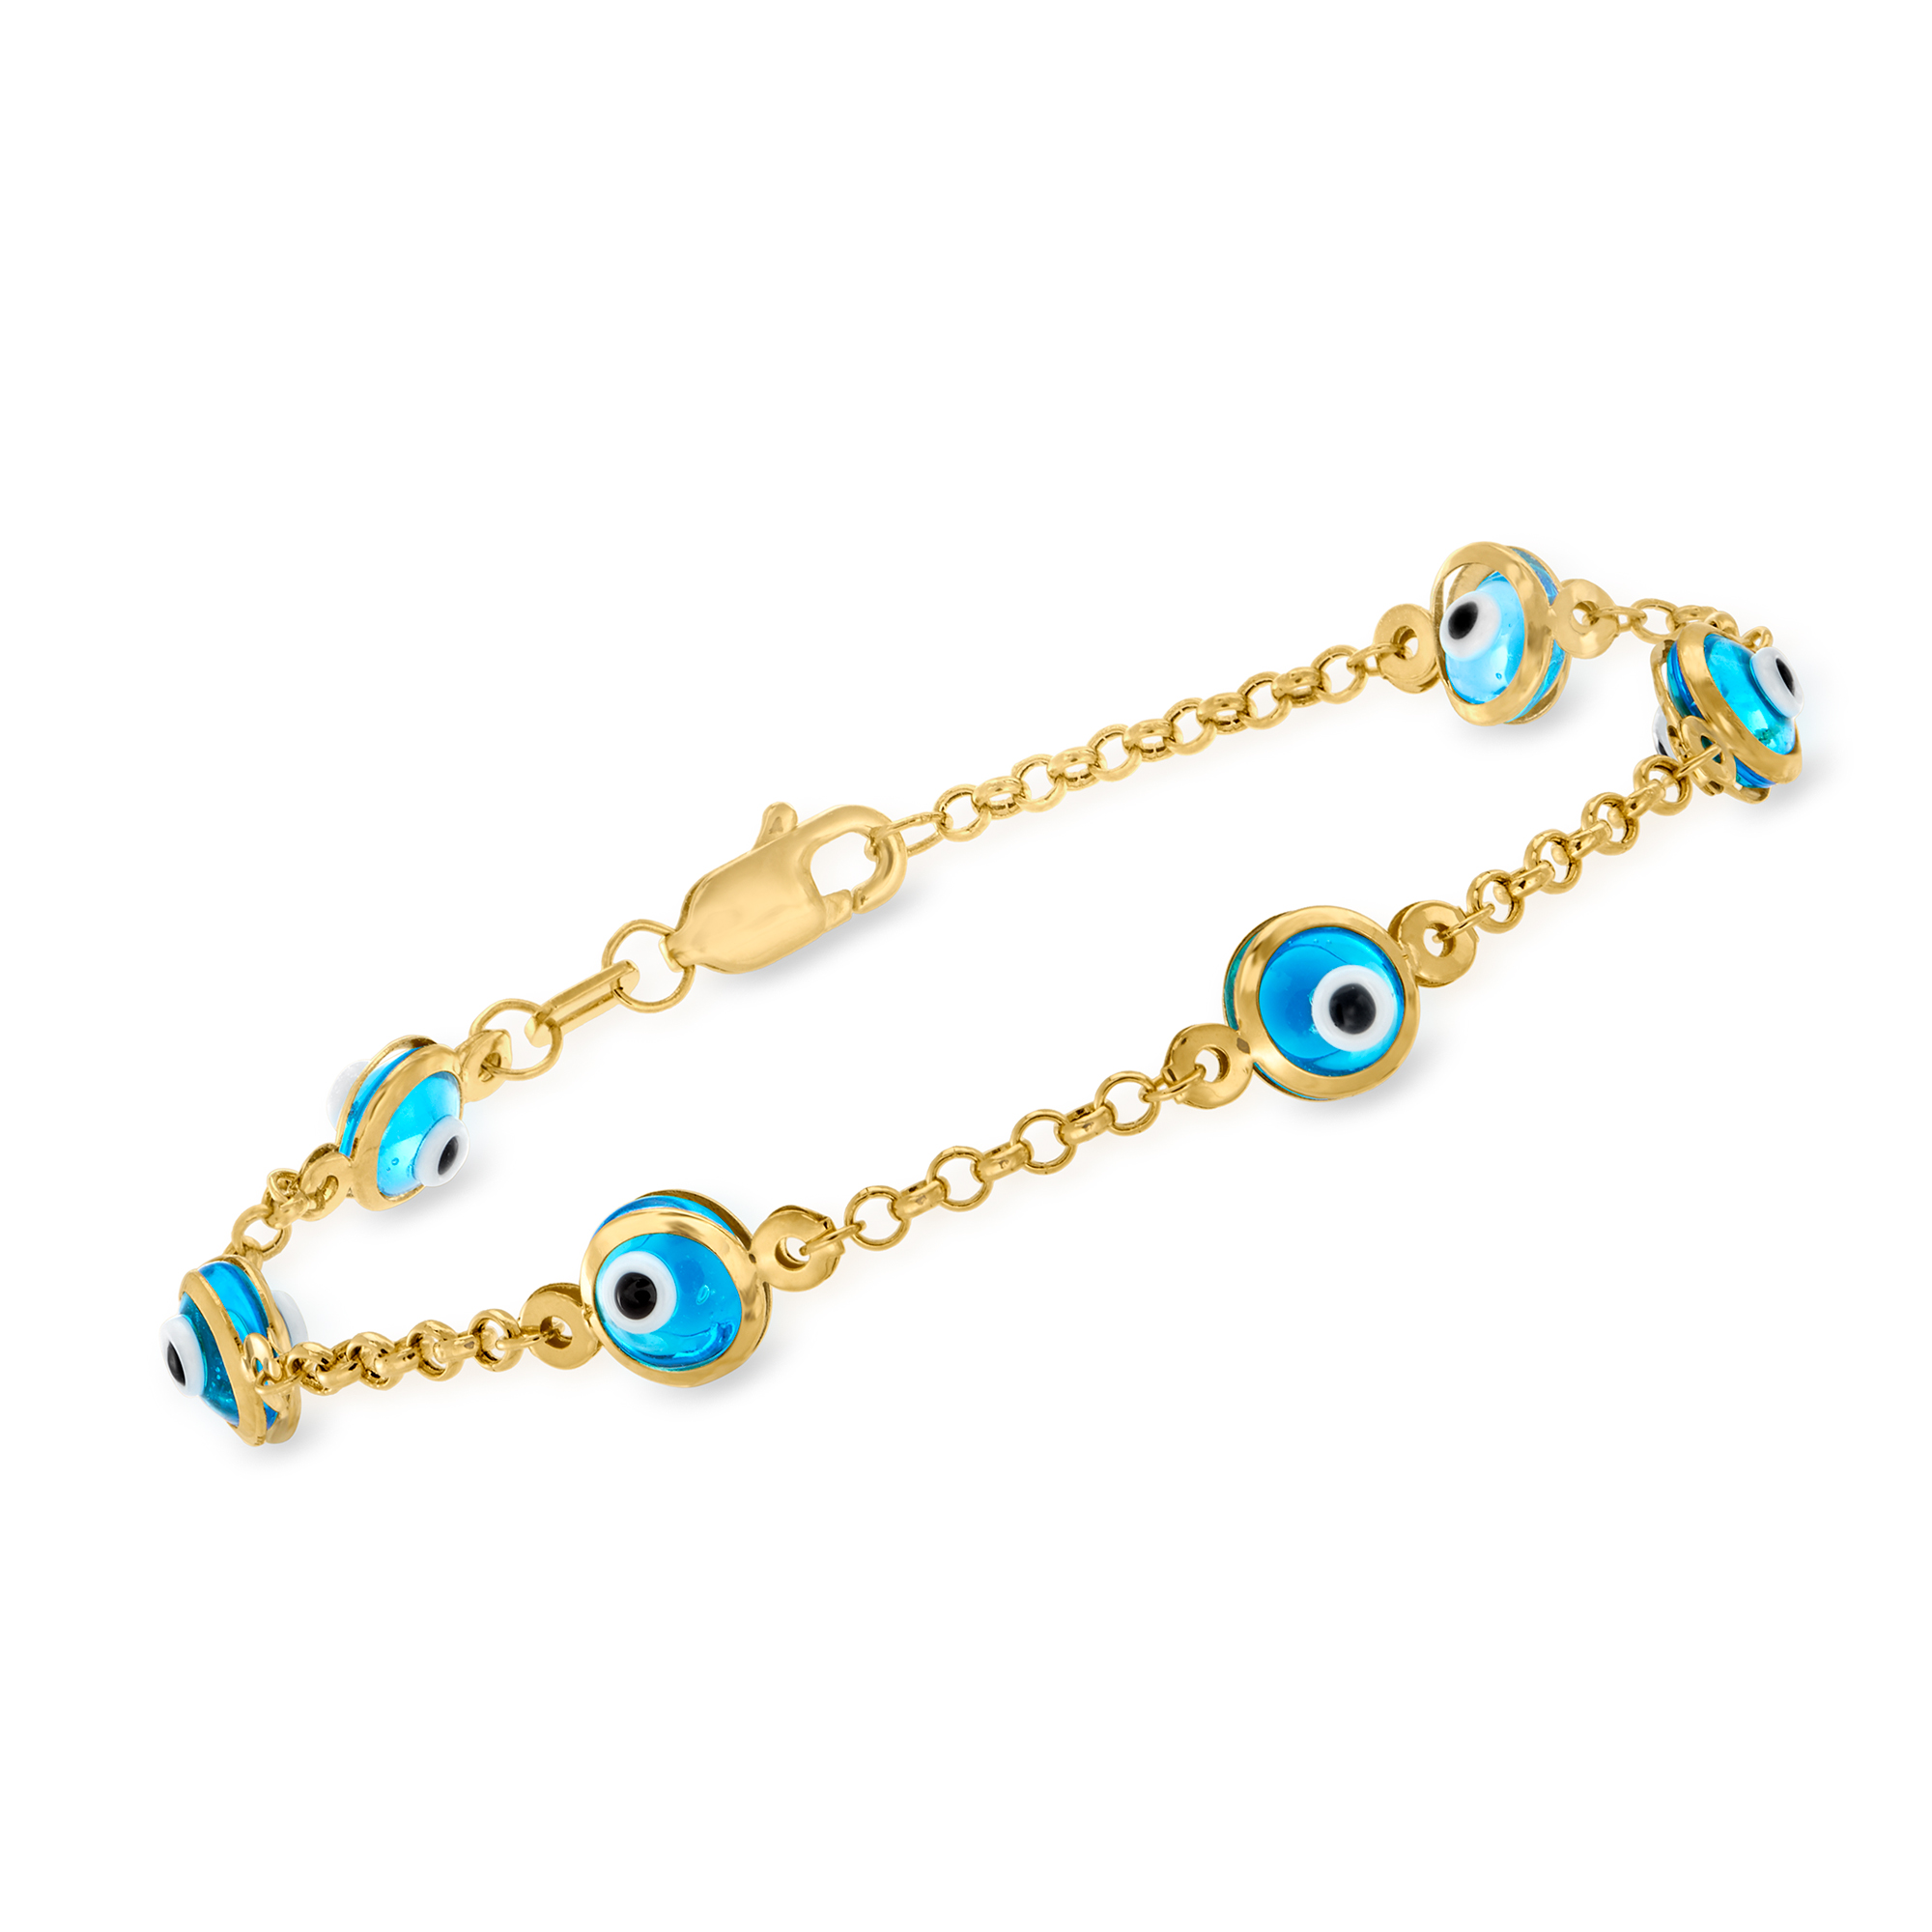 Child's 14kt Yellow Gold Evil Eye Station Bracelet. 5.5" | Ross-Simons